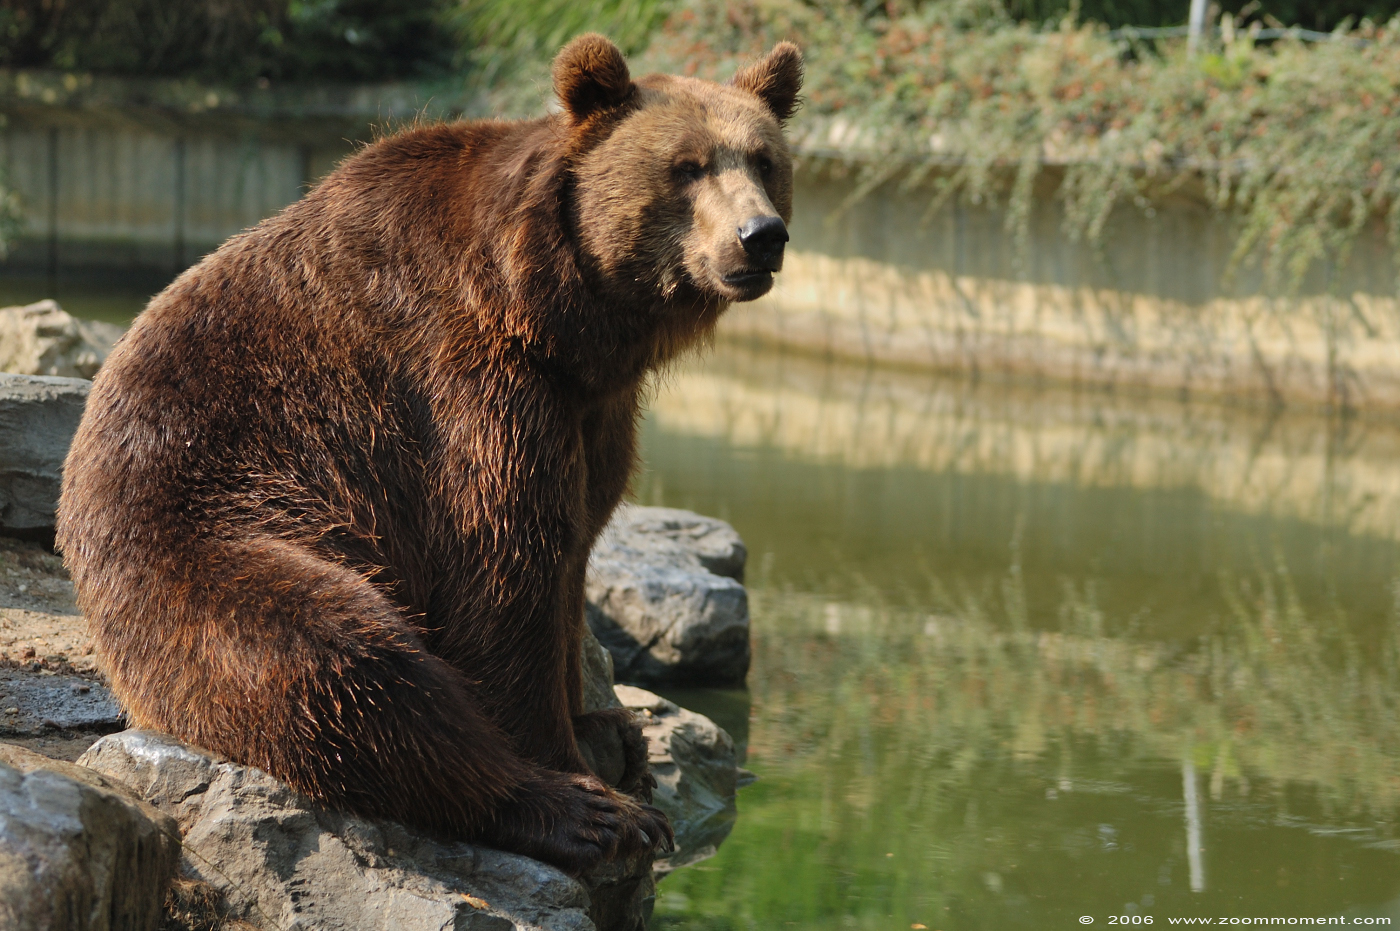 bruine beer  ( Ursus arctos )  brown bear
Trefwoorden: Olmen zoo Belgie Belgium bruine beer bear Ursus arctos